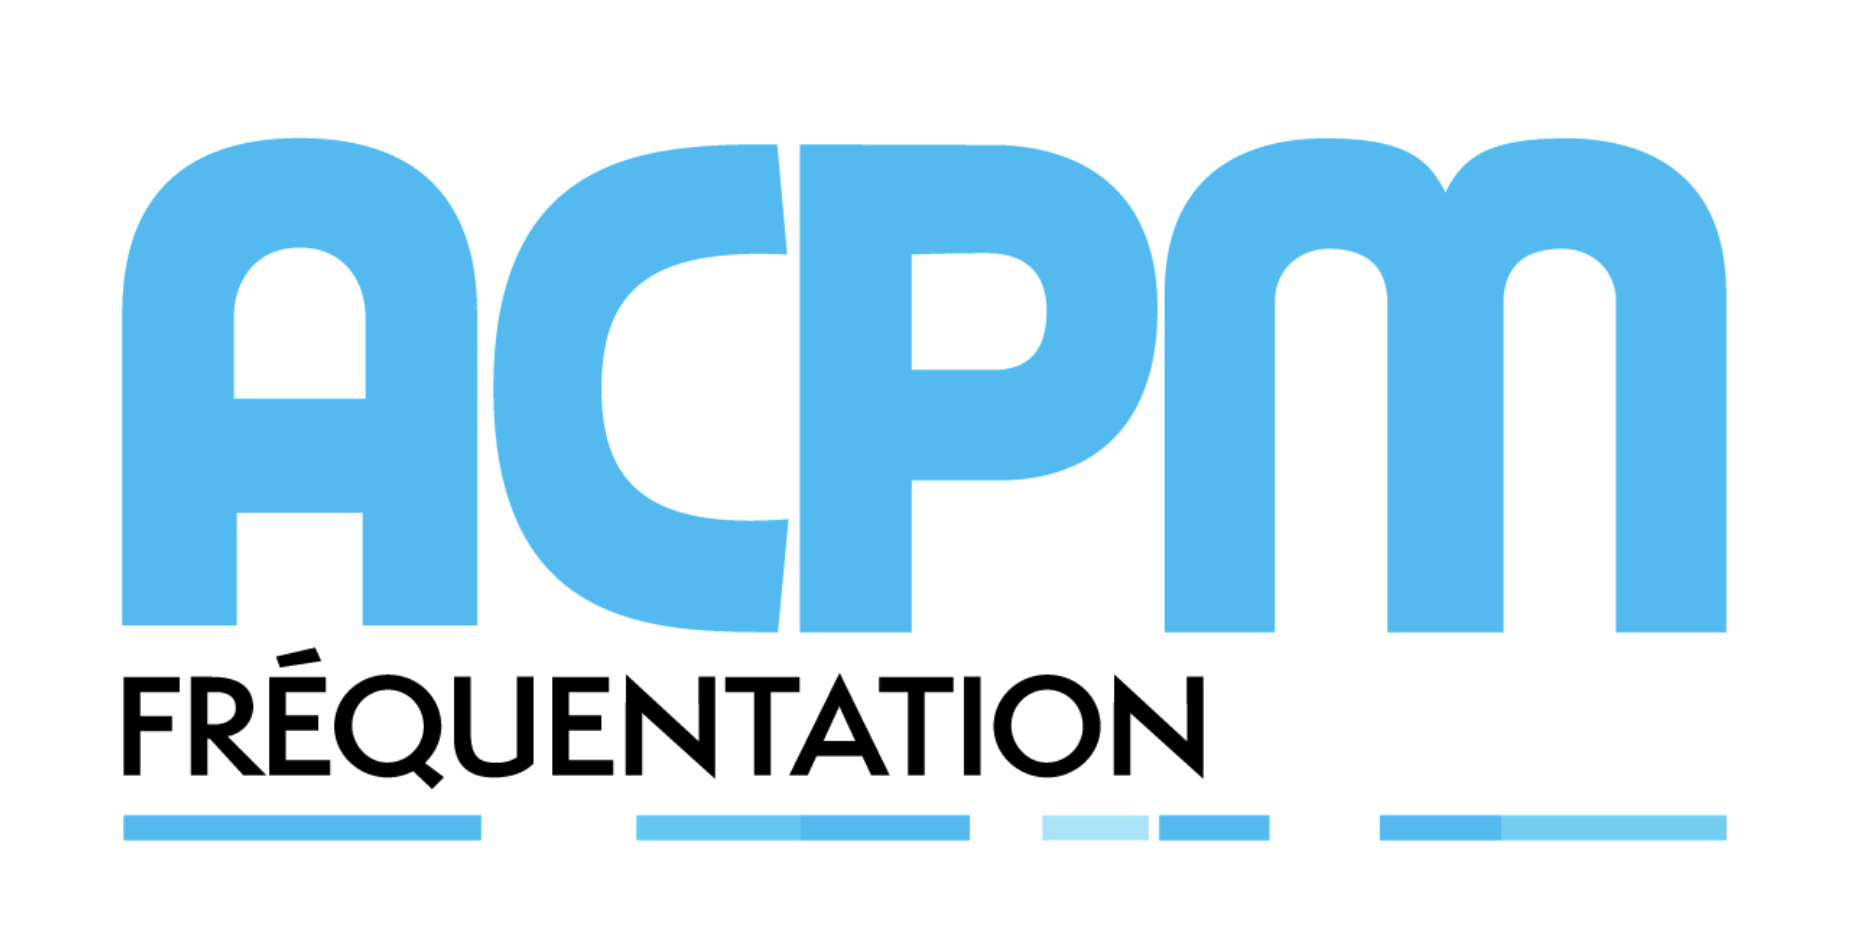 ACPM : les radios les plus écoutées en décembre sur le web